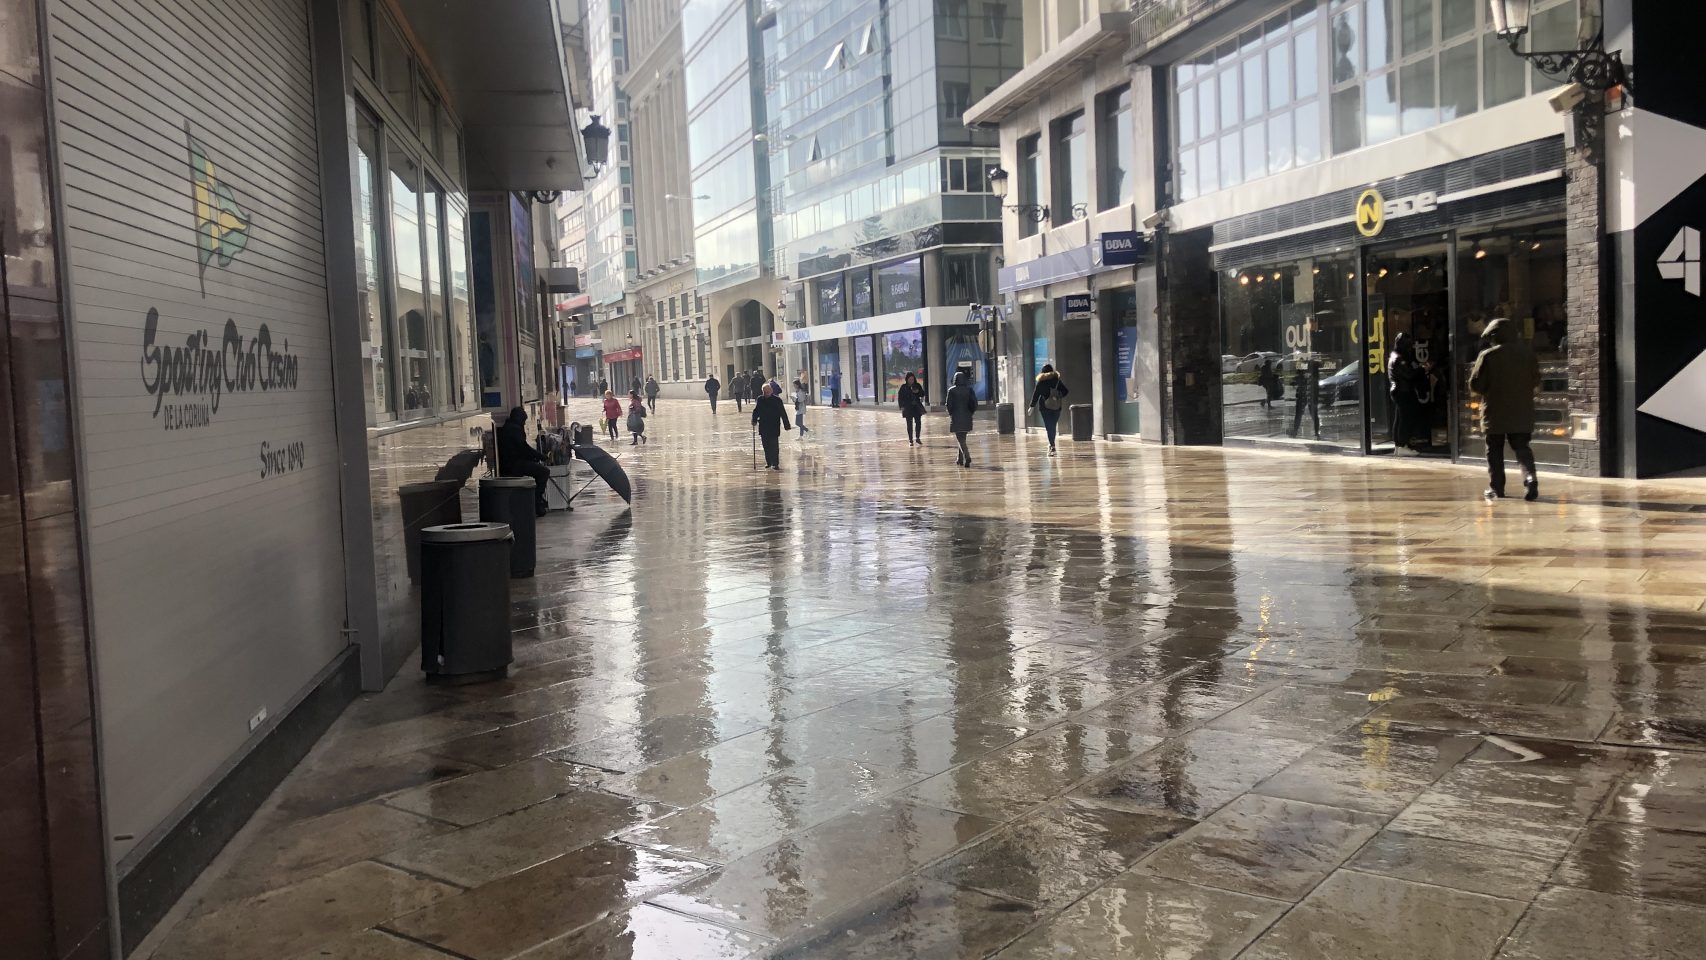 Imagen de la calle Real mojada tras una jornada de lluvias.